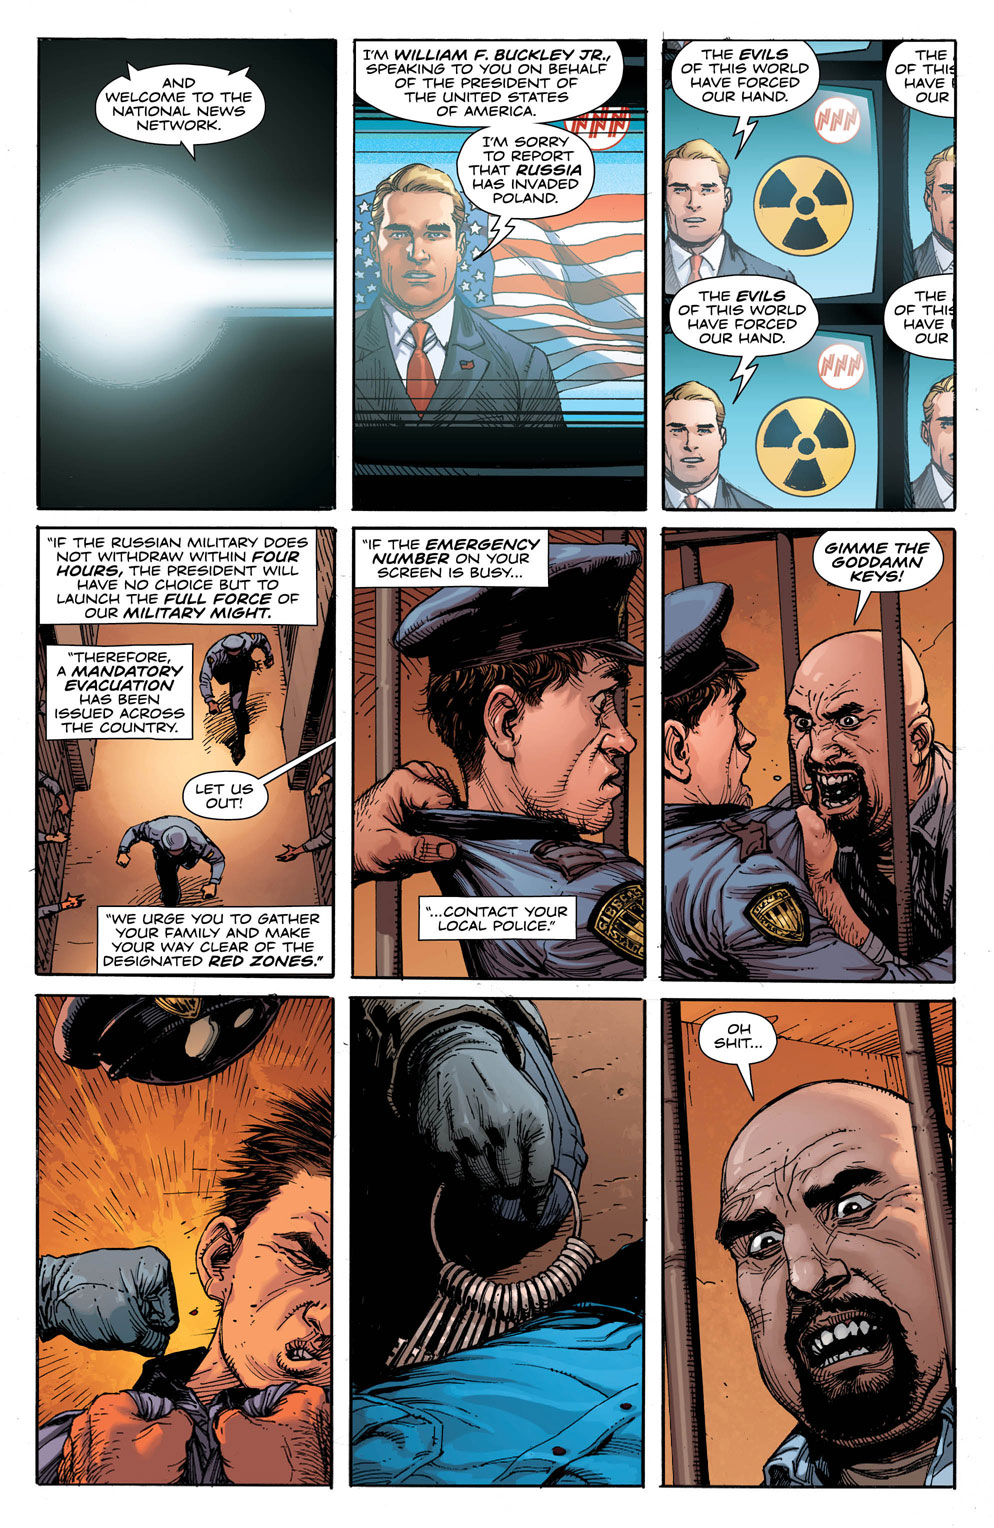 Doomsday Clock 1_5 - DC Comics News